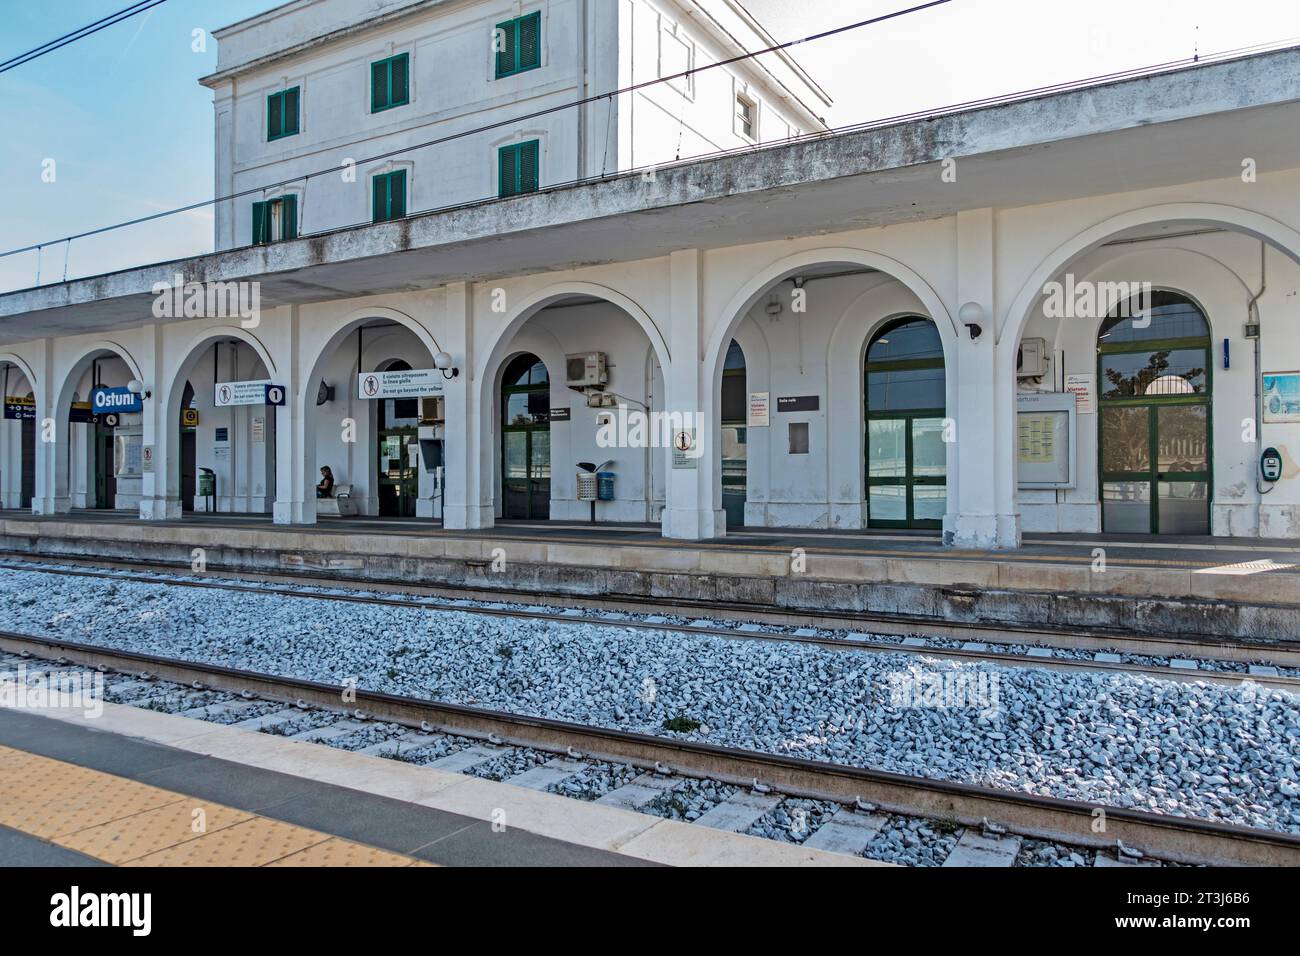 La gare d'Ostuni, Italie. Les services ferroviaires sont exploités par Trenitalia, le principal opérateur ferroviaire en Italie. Banque D'Images